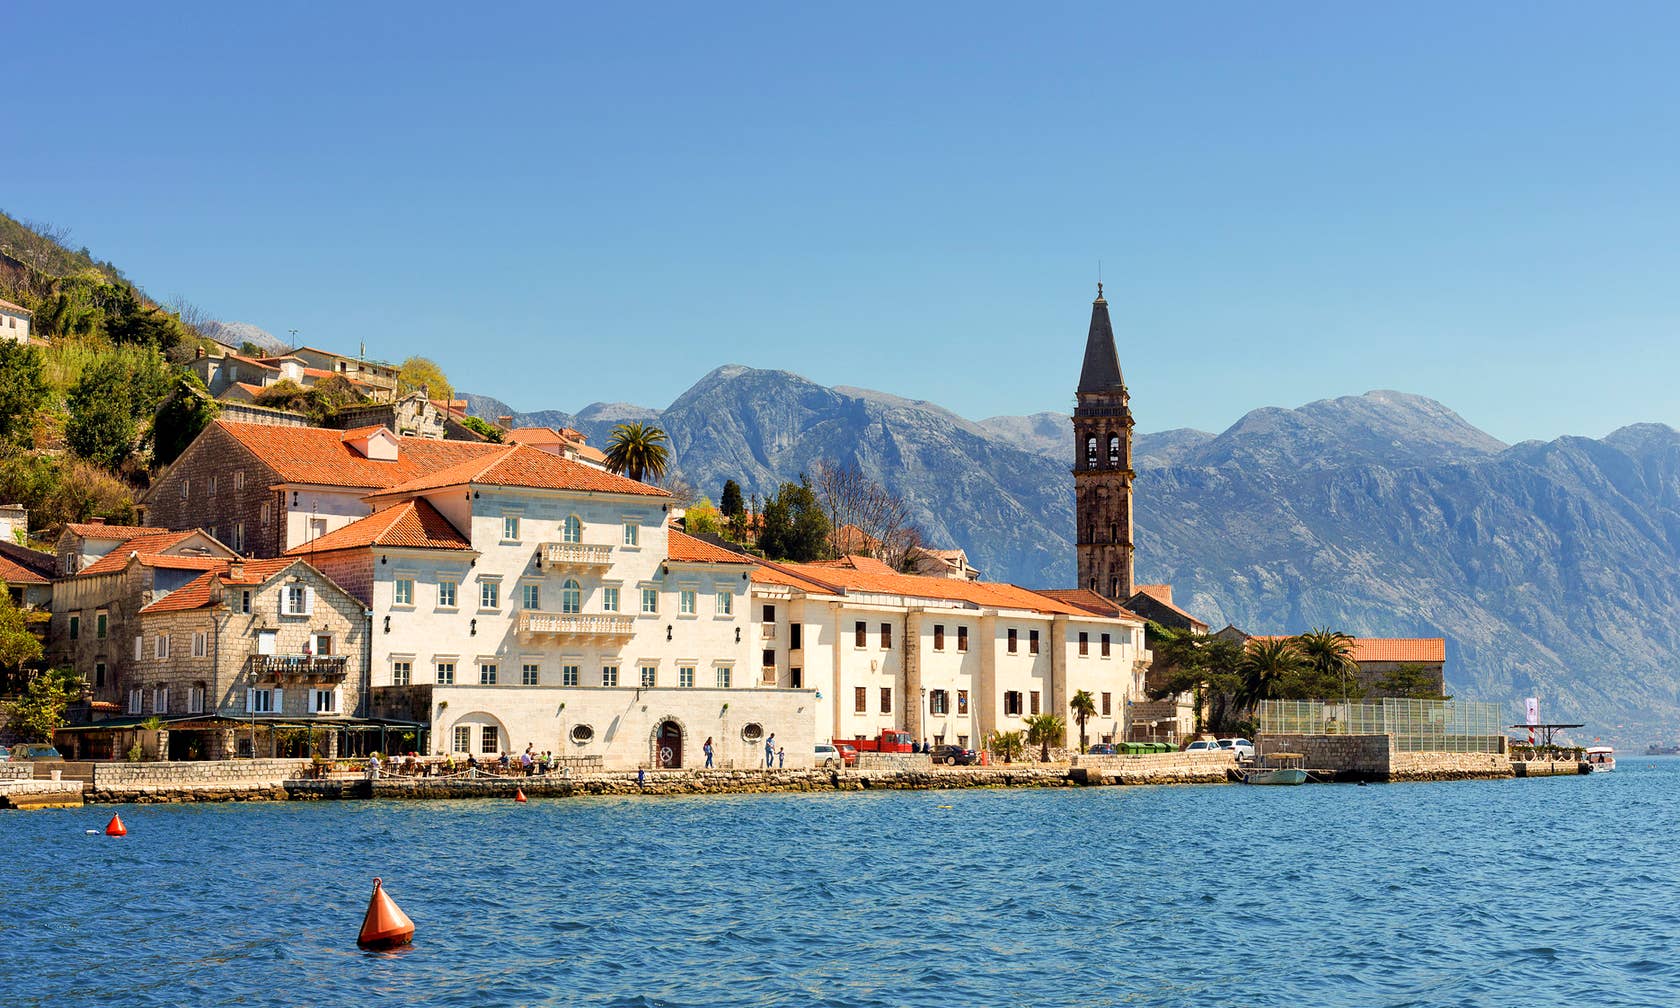 Holiday rentals in Montenegro